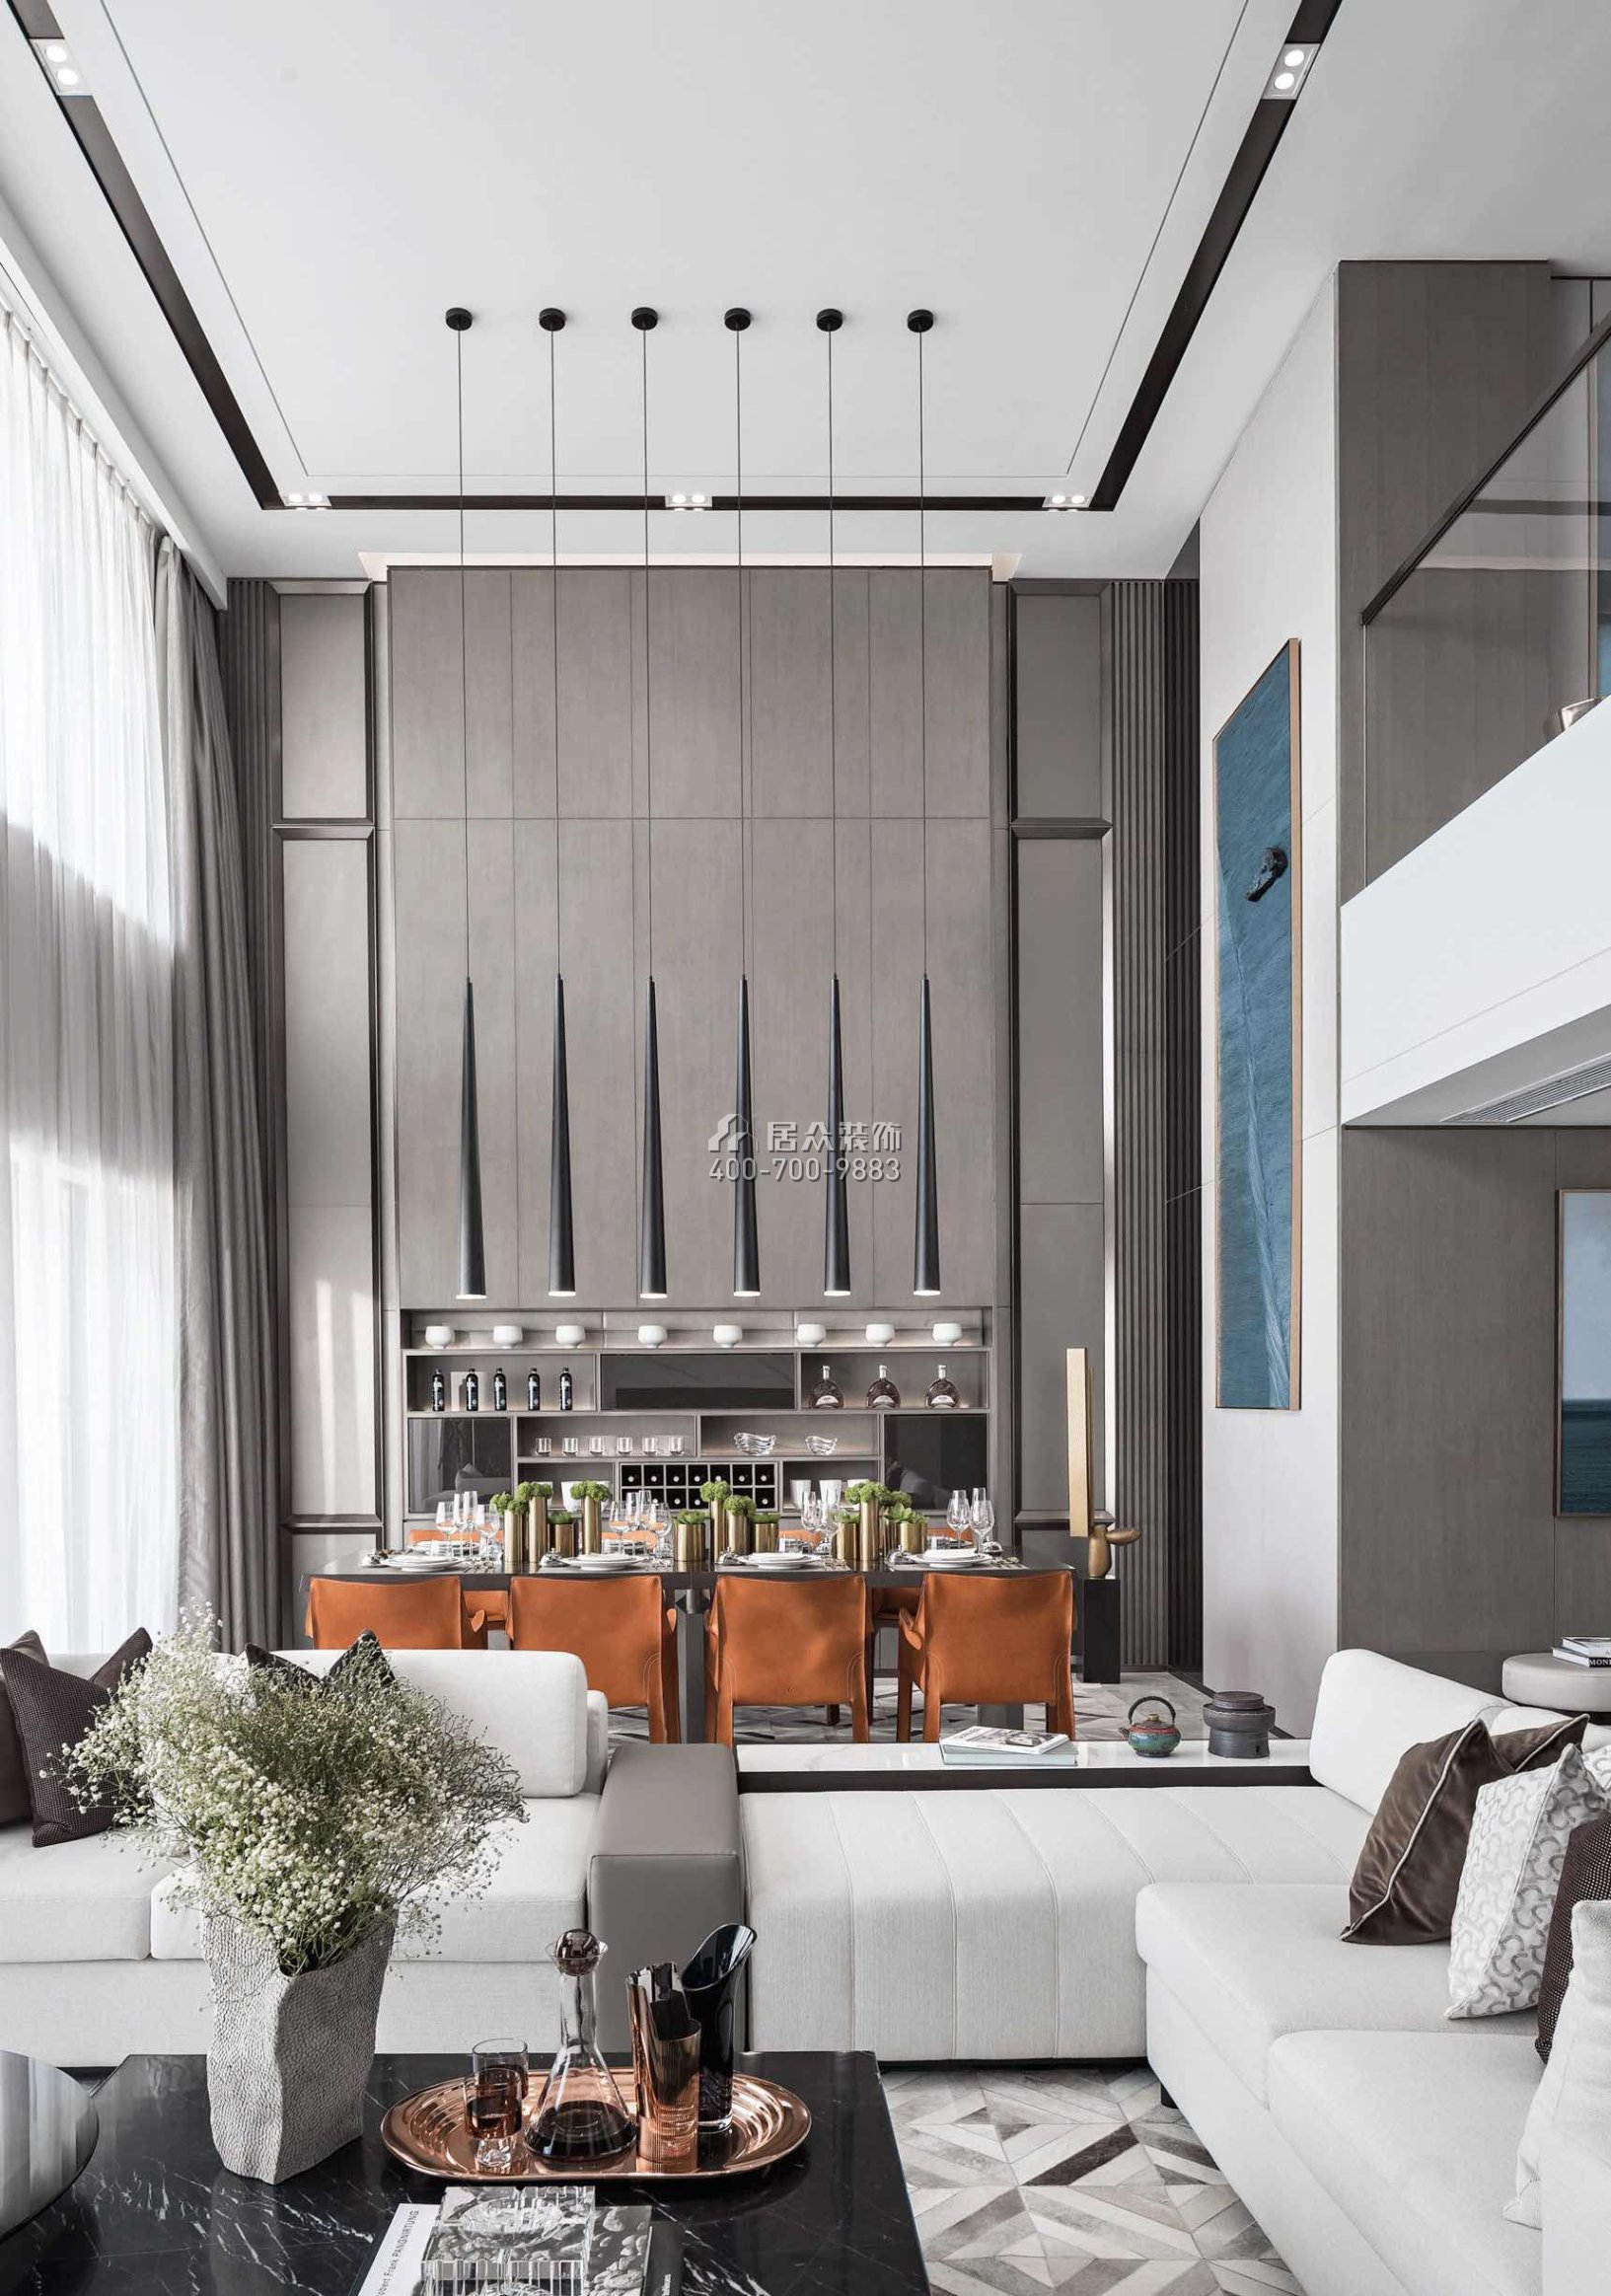 天驕御峰500平方米現代簡約風格別墅戶型客餐廳一體裝修效果圖